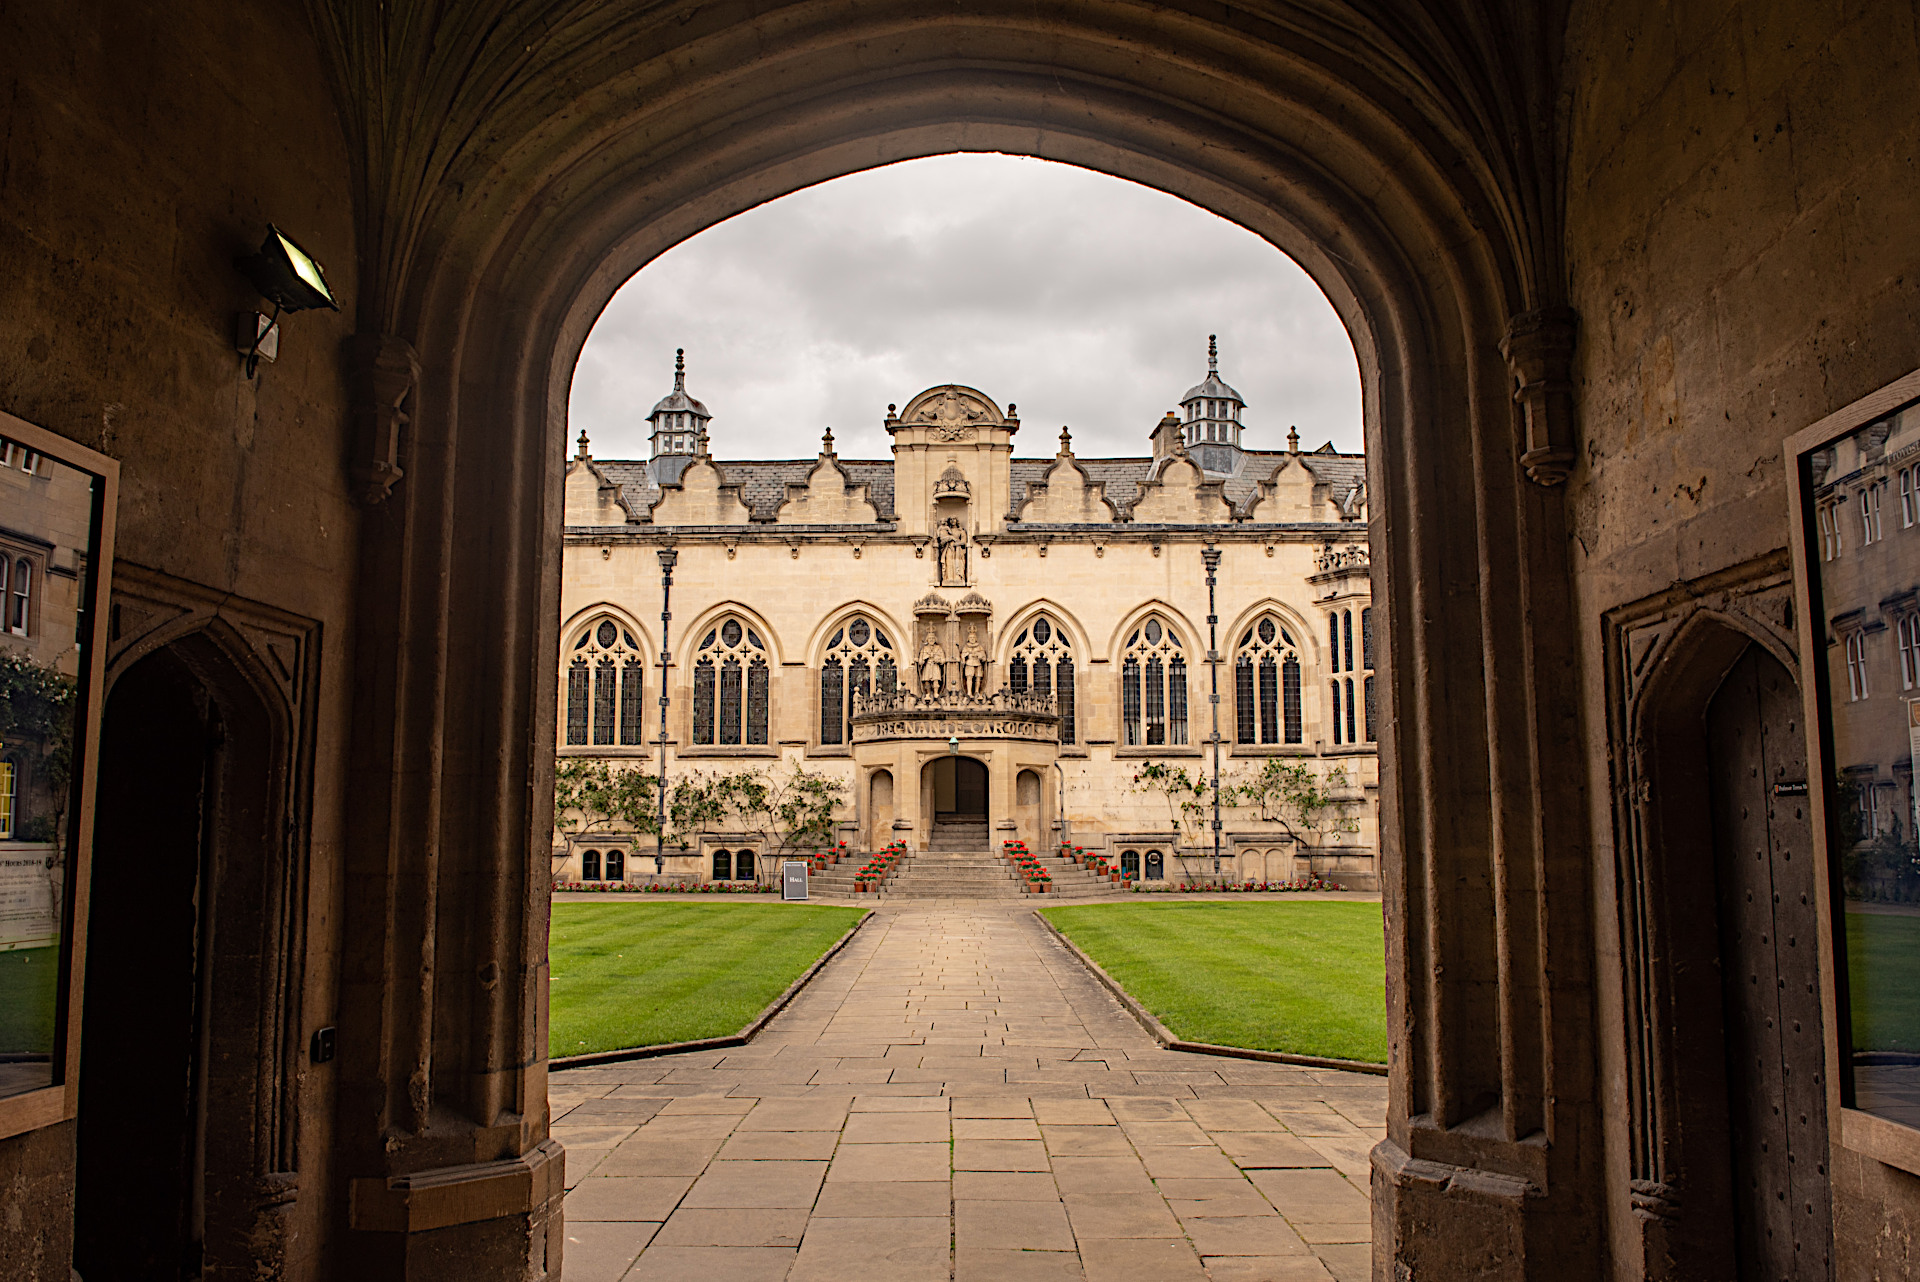 Oxford Oriel College interiors